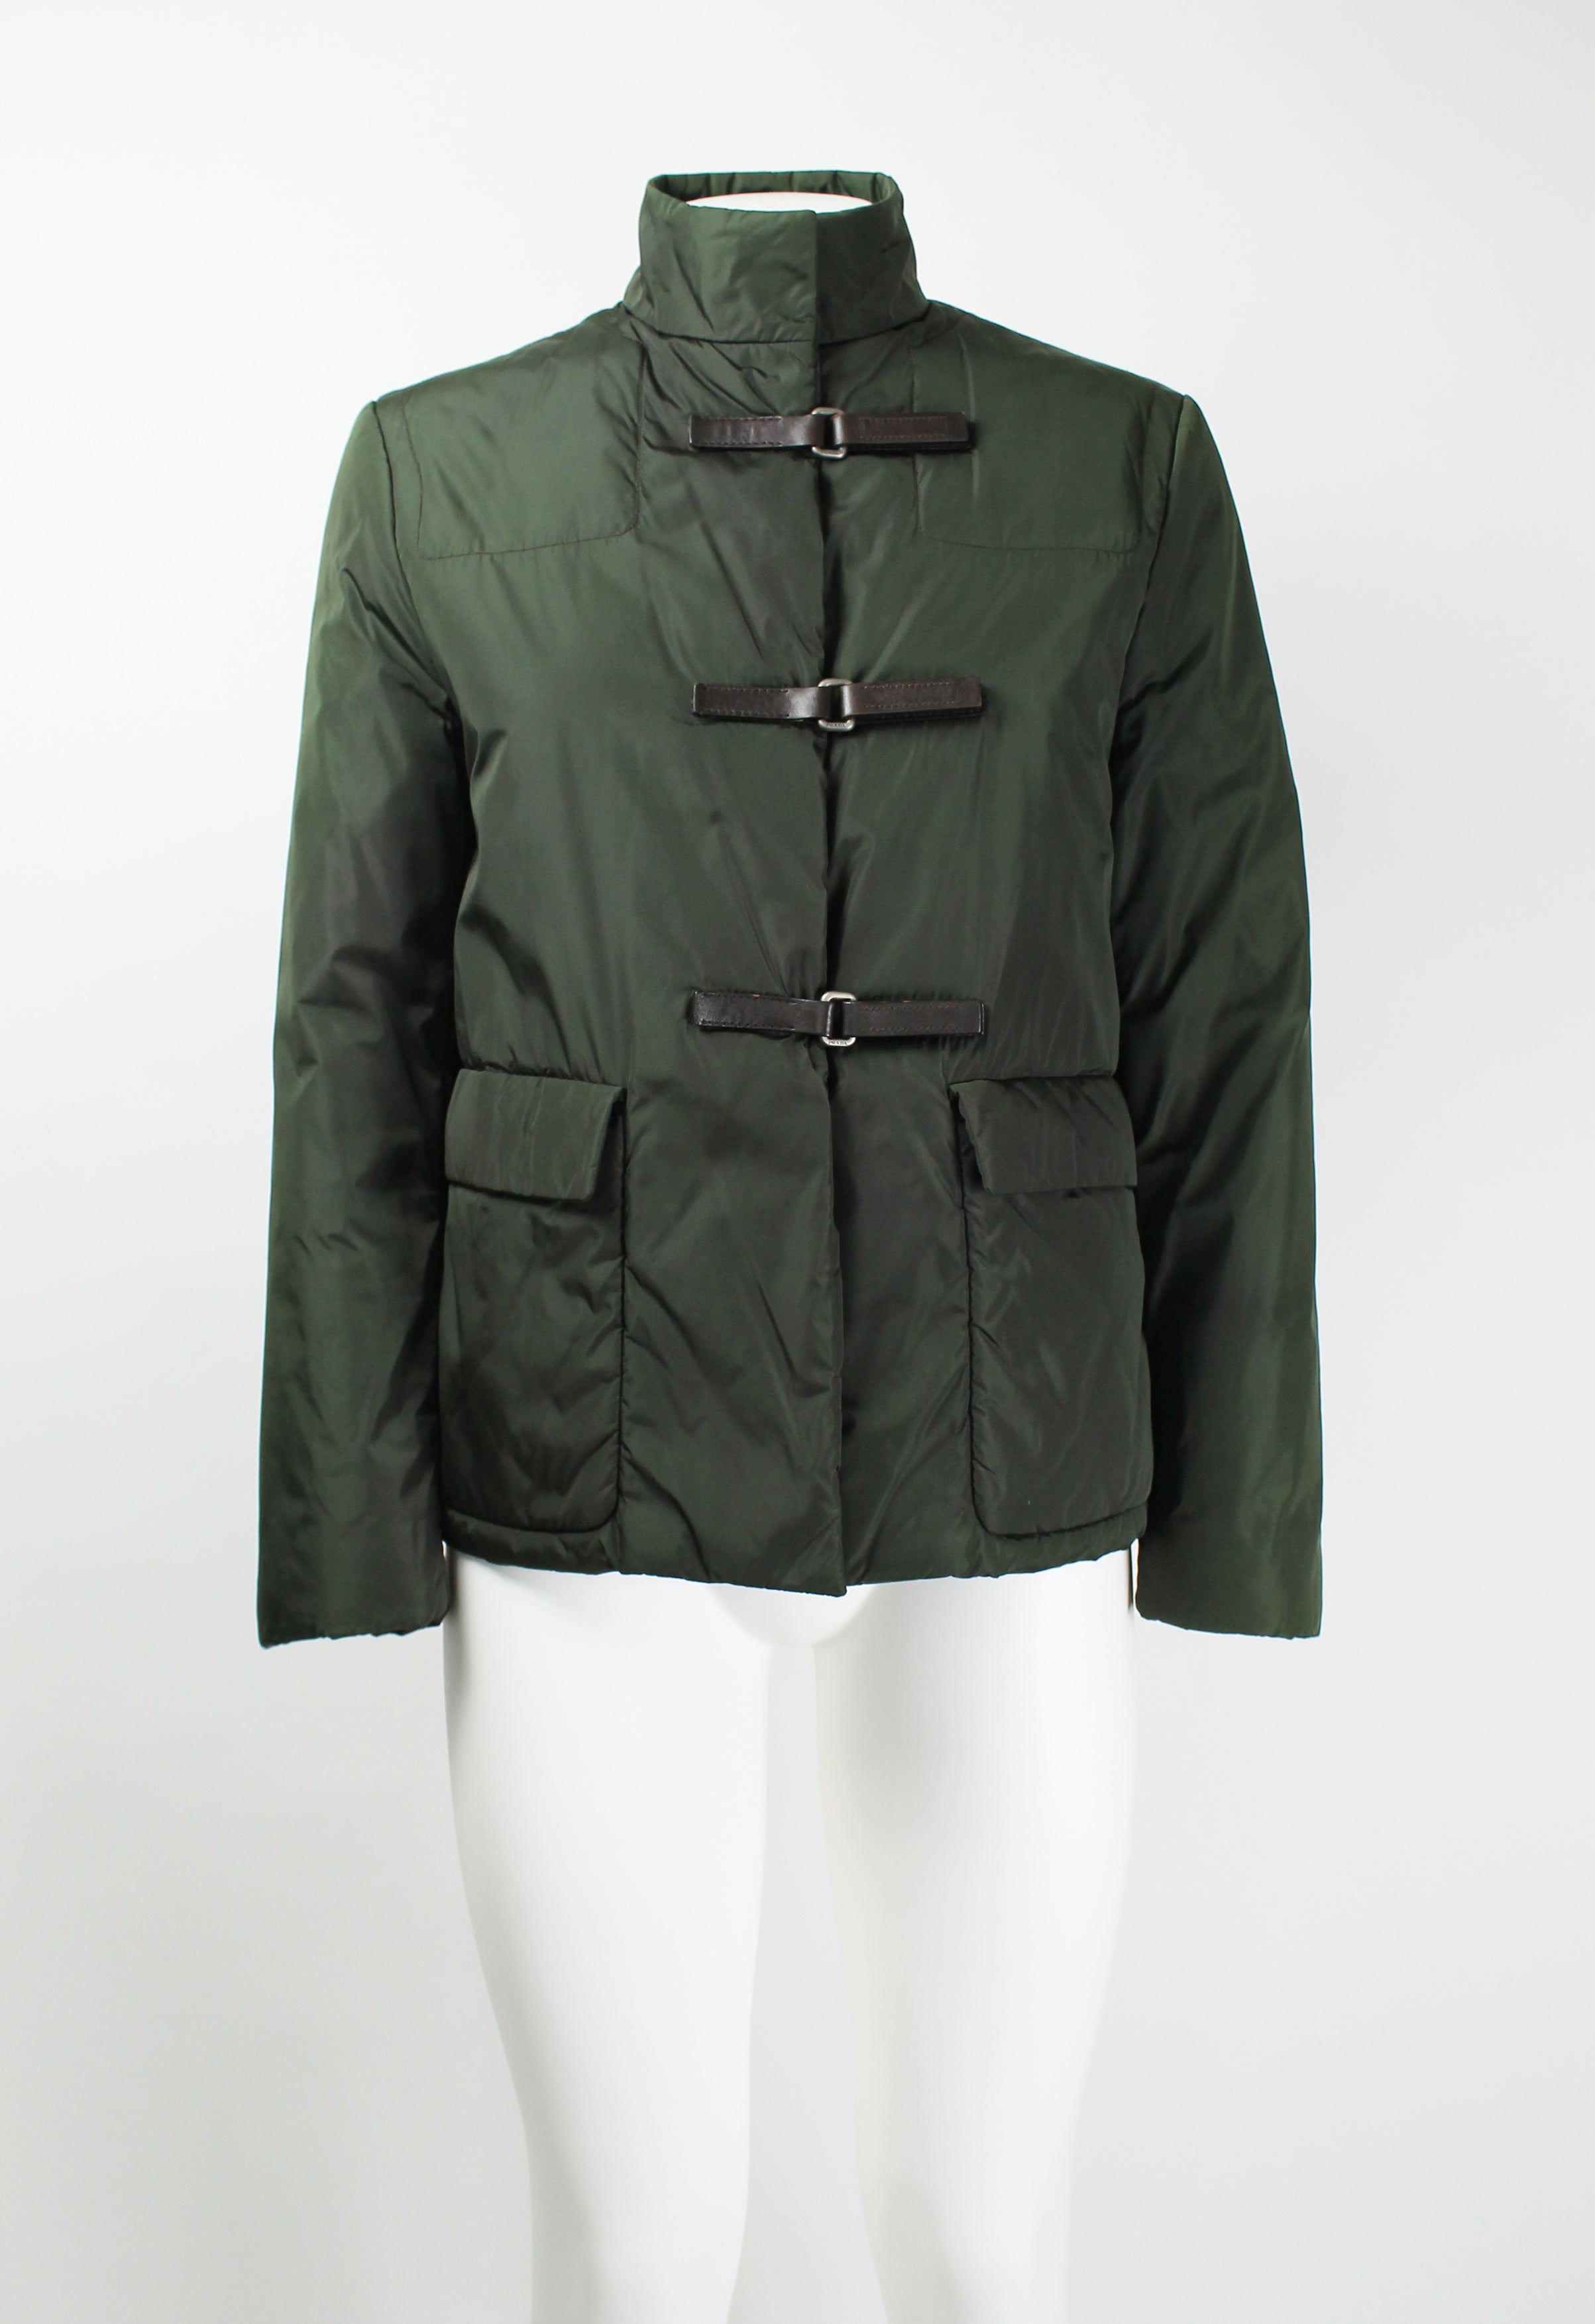 店舗併売品 1999fw prada down jacket patted jacket | erational.com